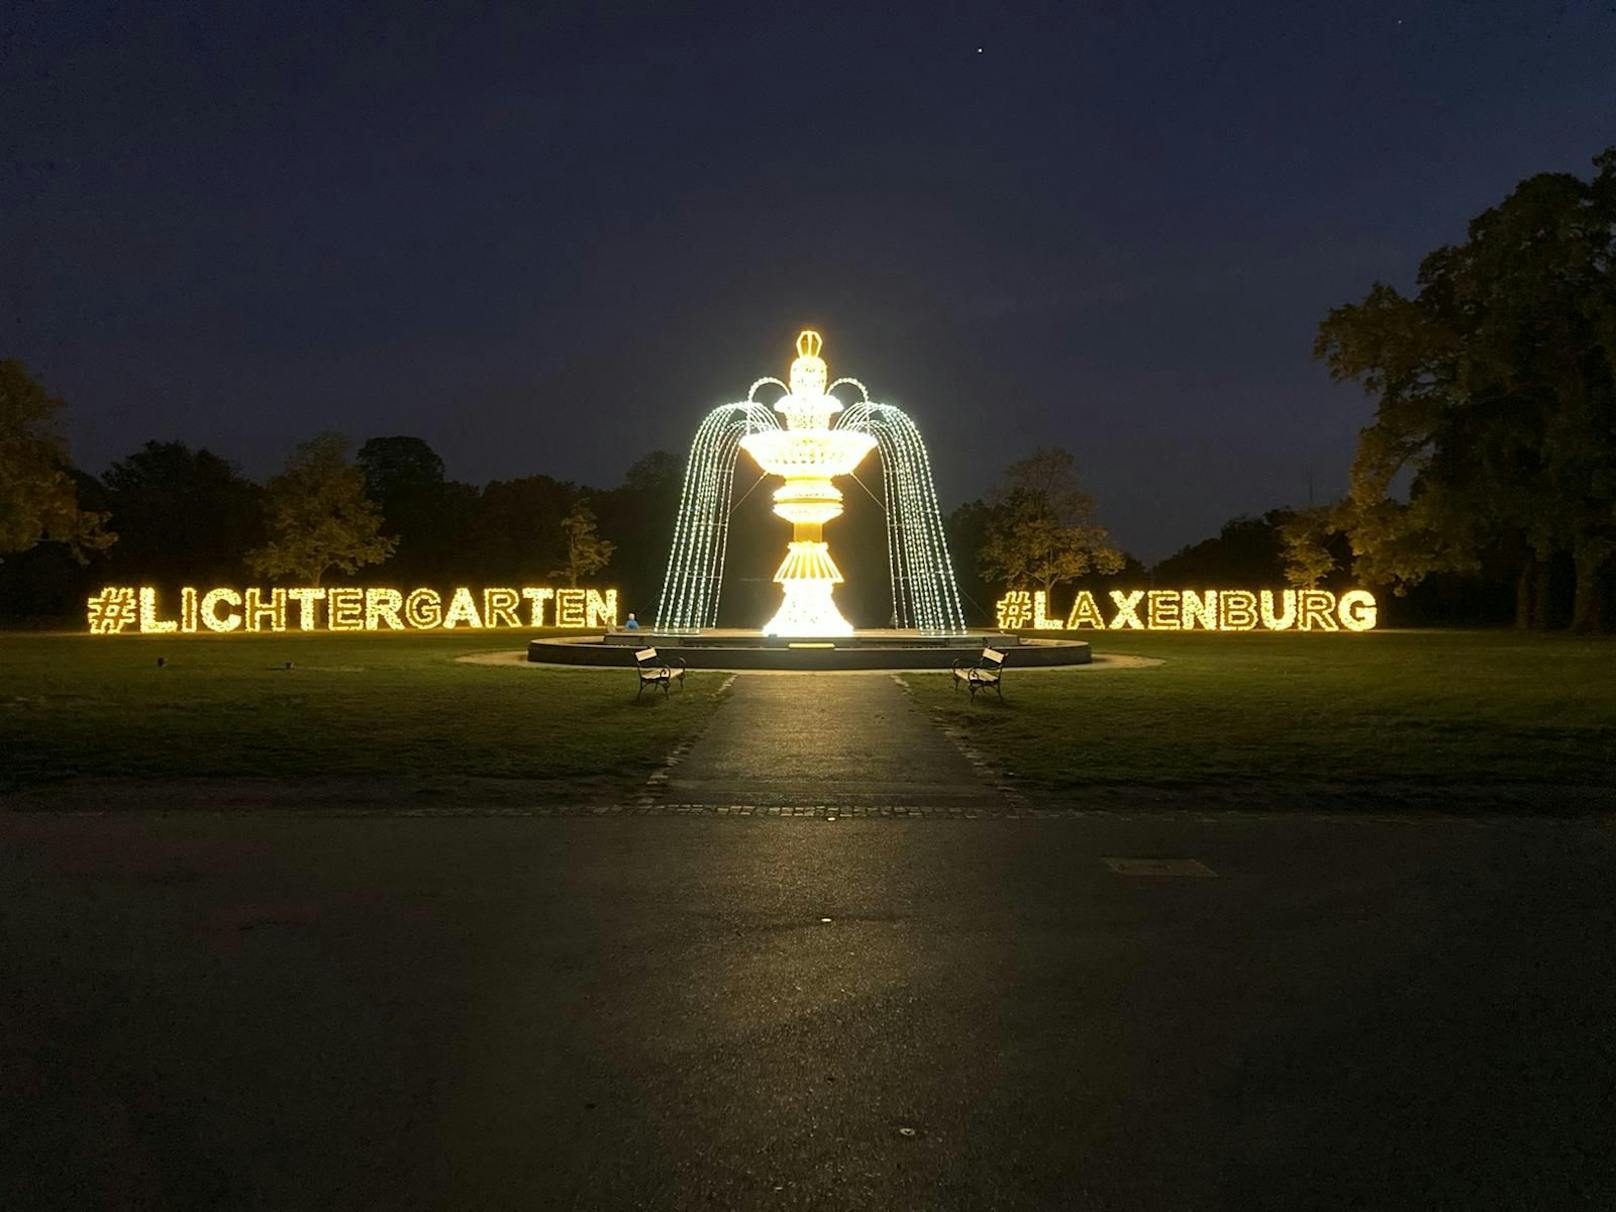 "llumina", der magische Lichtergarten im Schlosspark Laxenburg